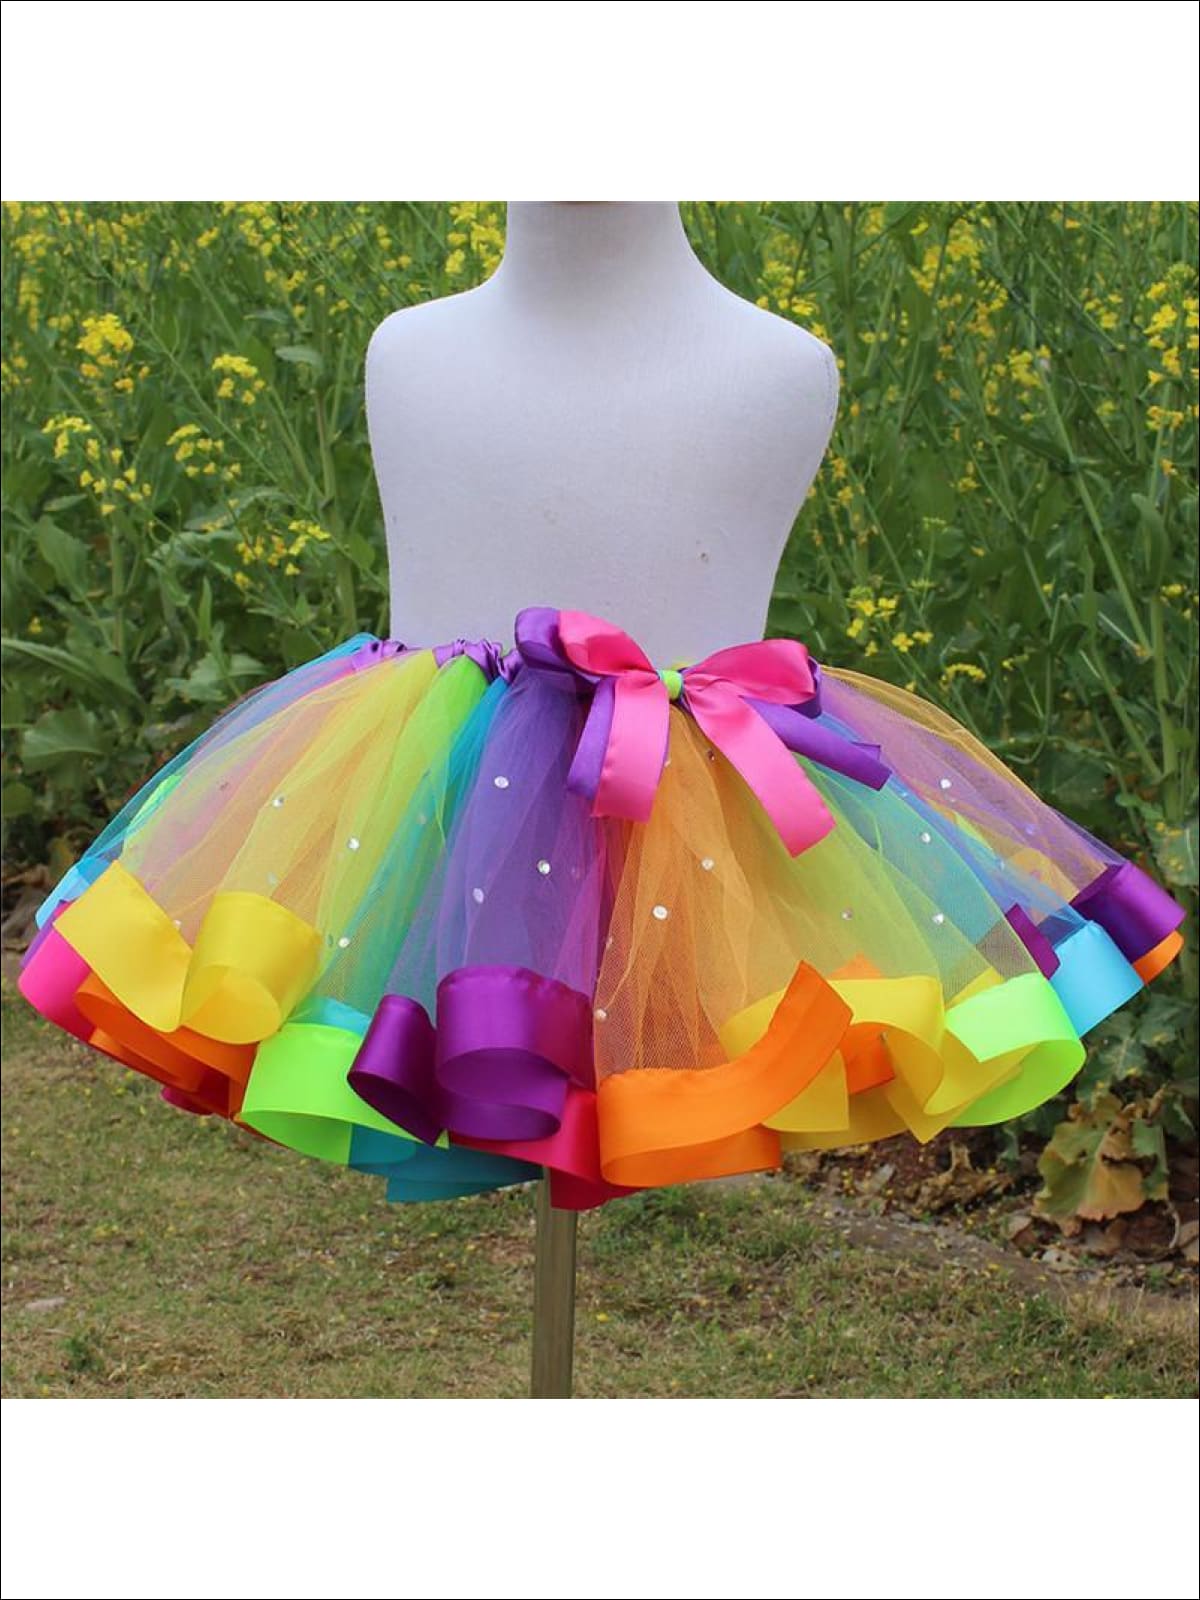 Girls Magical Rainbow Tutu With Rhinestones - Girls Skirt